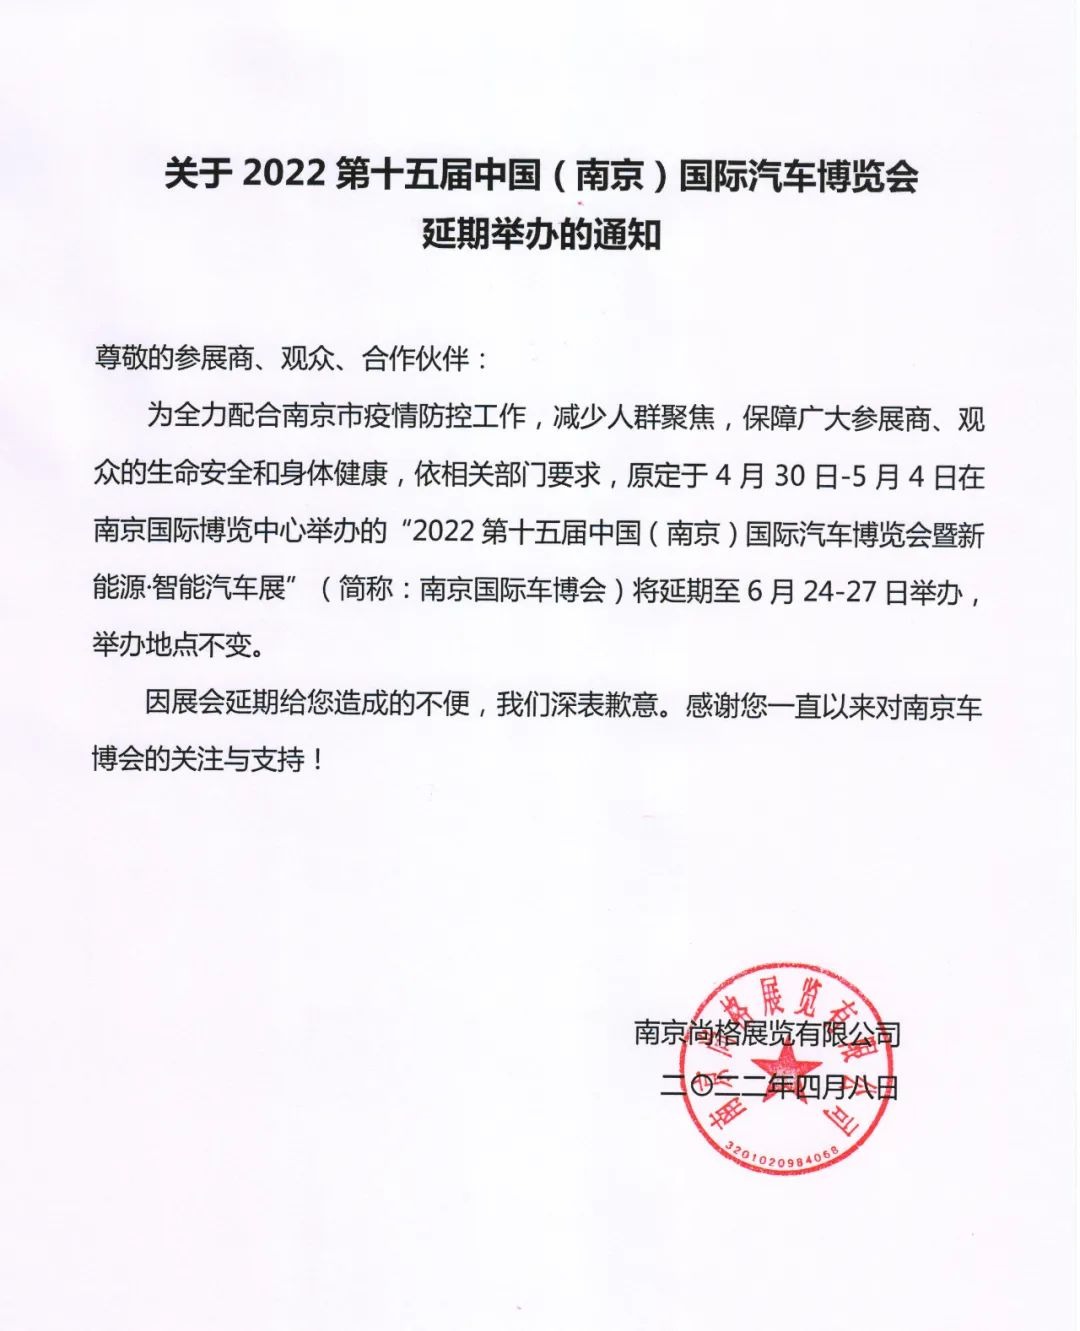 南京国际汽车博览会延期